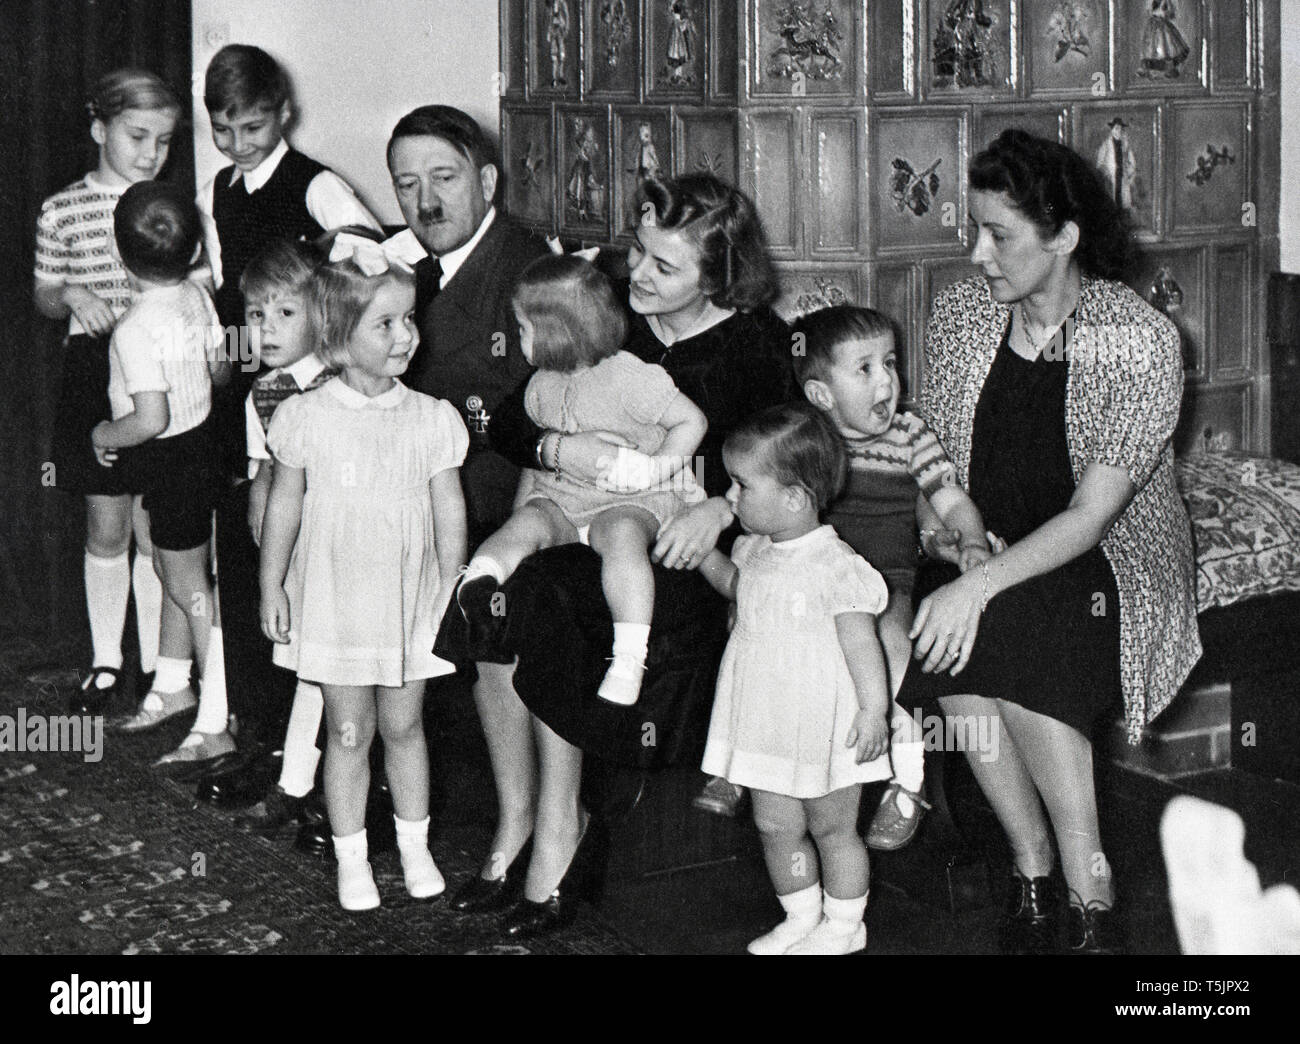 Eva Braun Collection (osam) - Original Caption: Bormanns und Speers - Kinder wünschen ein Gutes 1940 / Bormann and Speer - Children wish a happy 1940 - Adolf Hitler with group of children Stock Photo